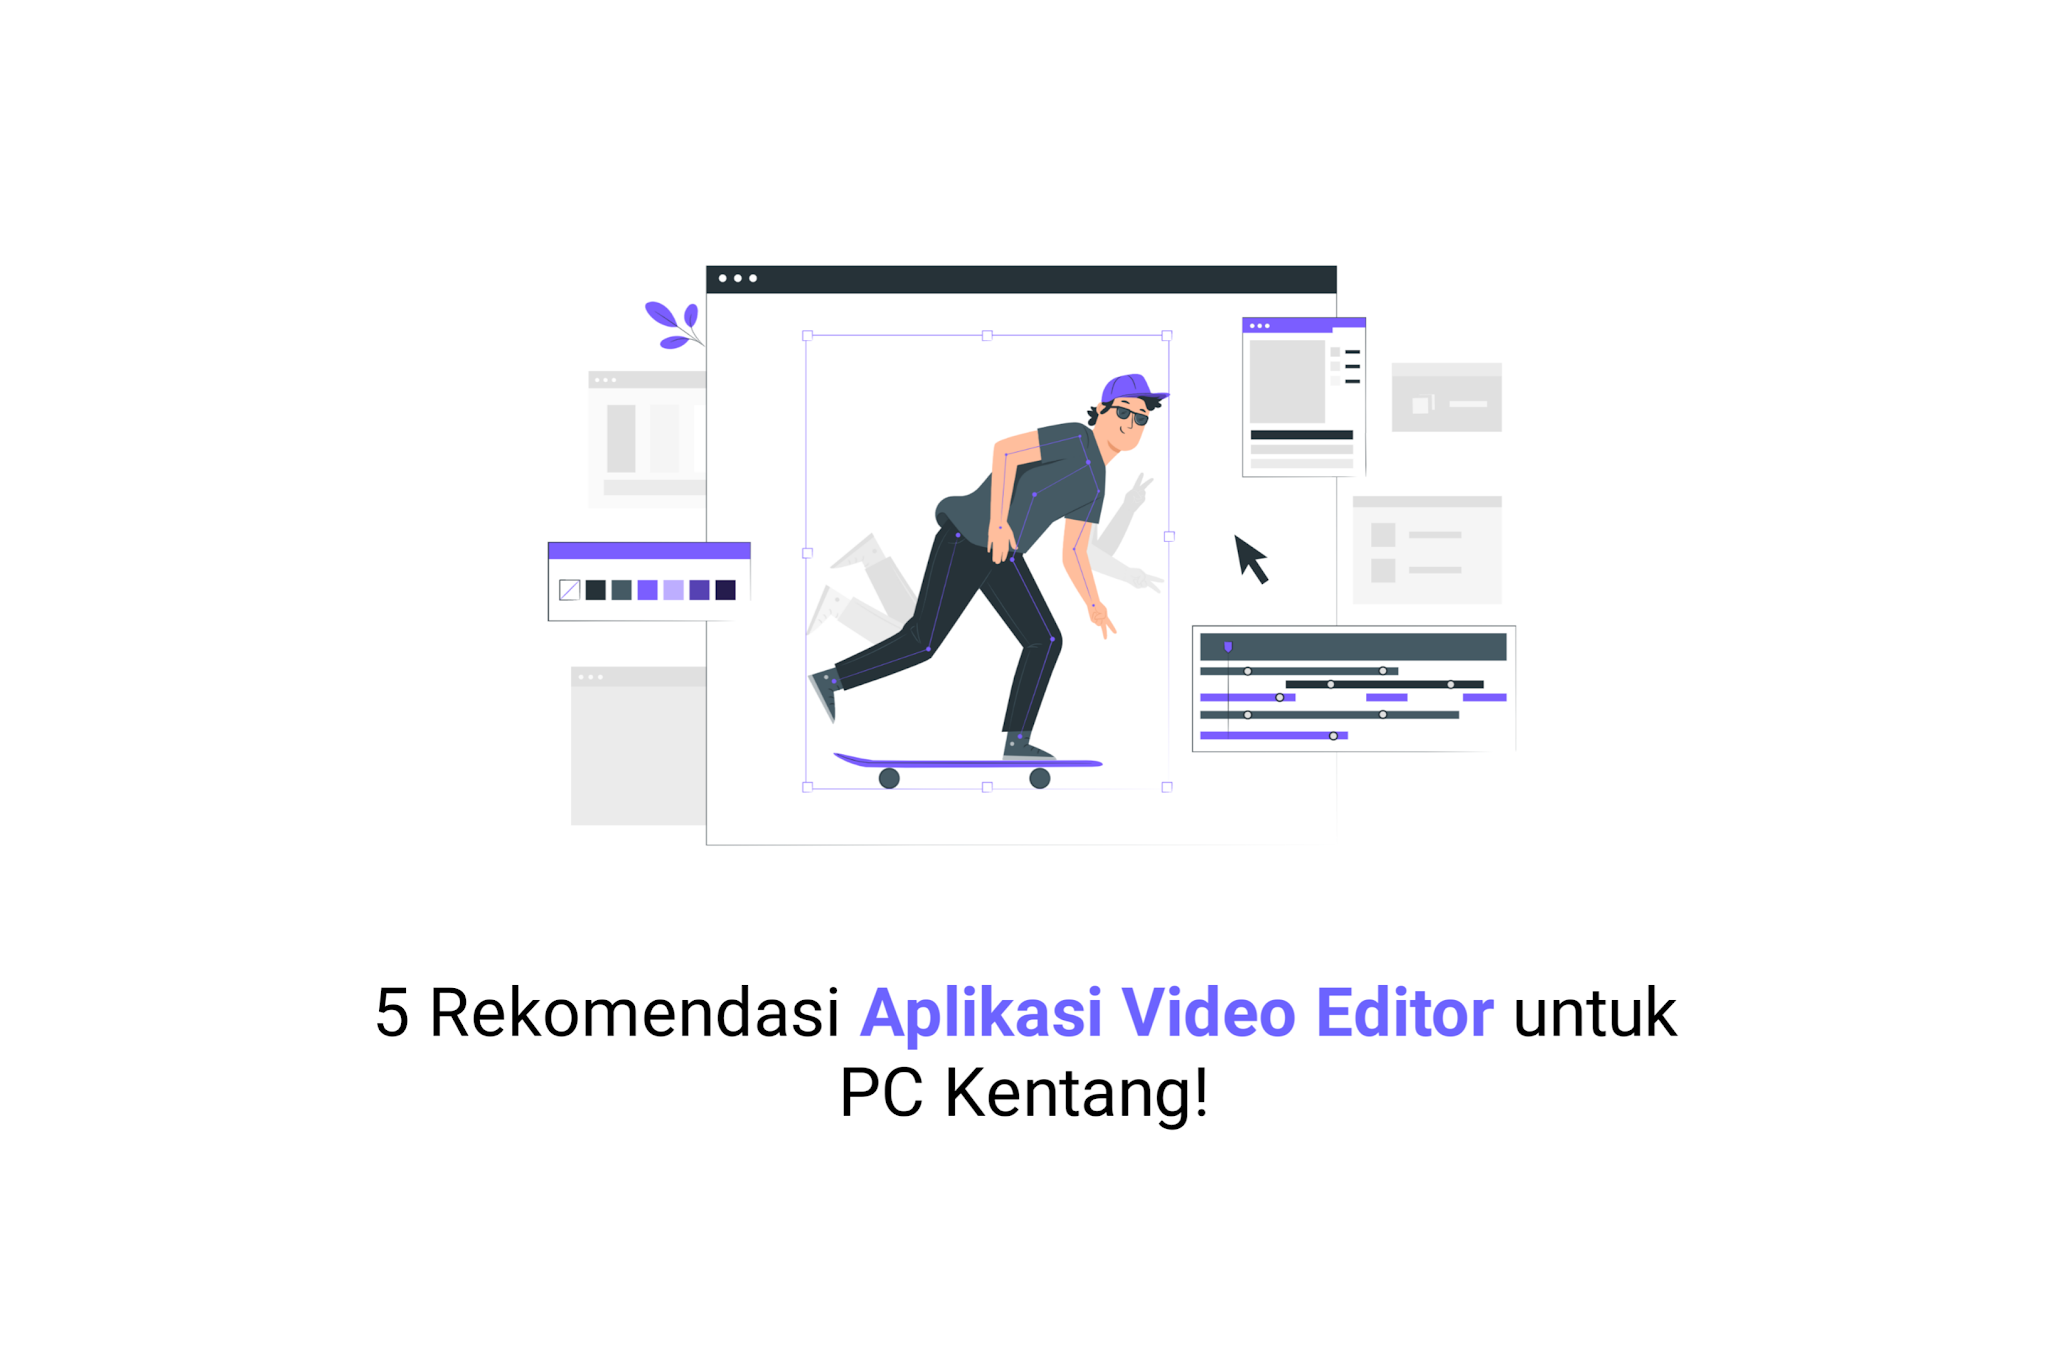 5 Rekomendasi Aplikasi Video Editor untuk PC Kentang